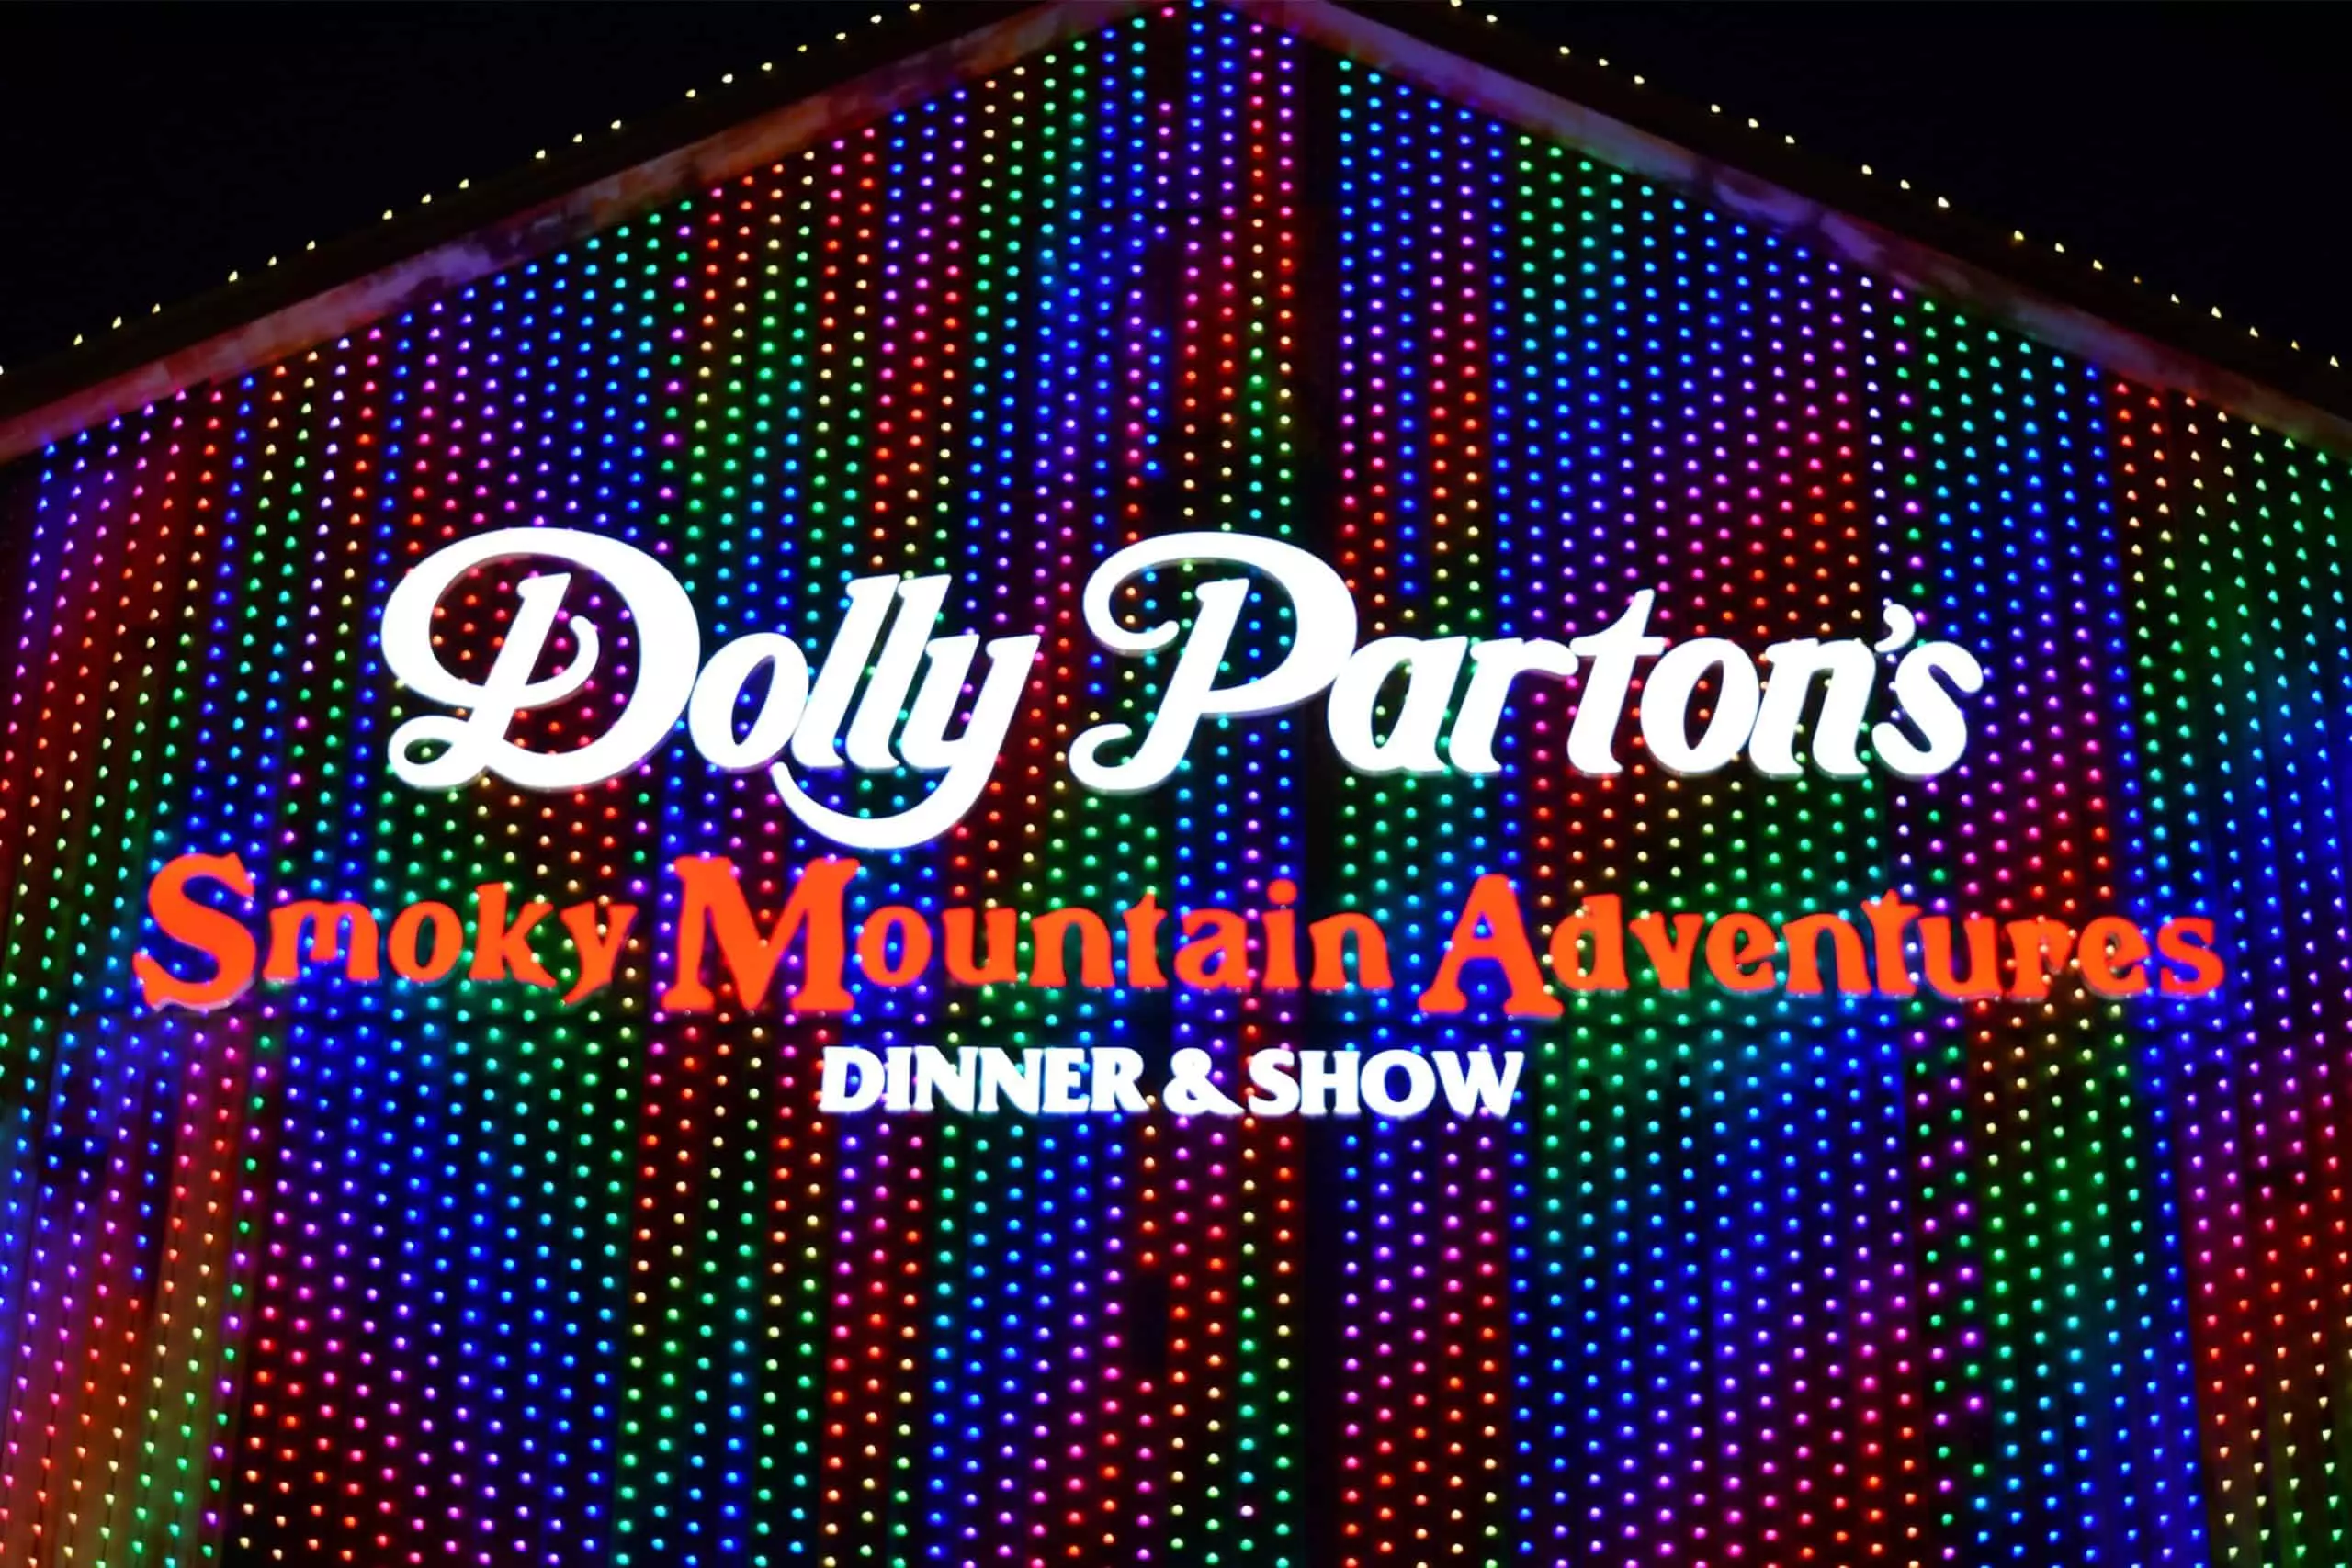 Dolly Parton's Smoky Mountain Adventures xmas lights